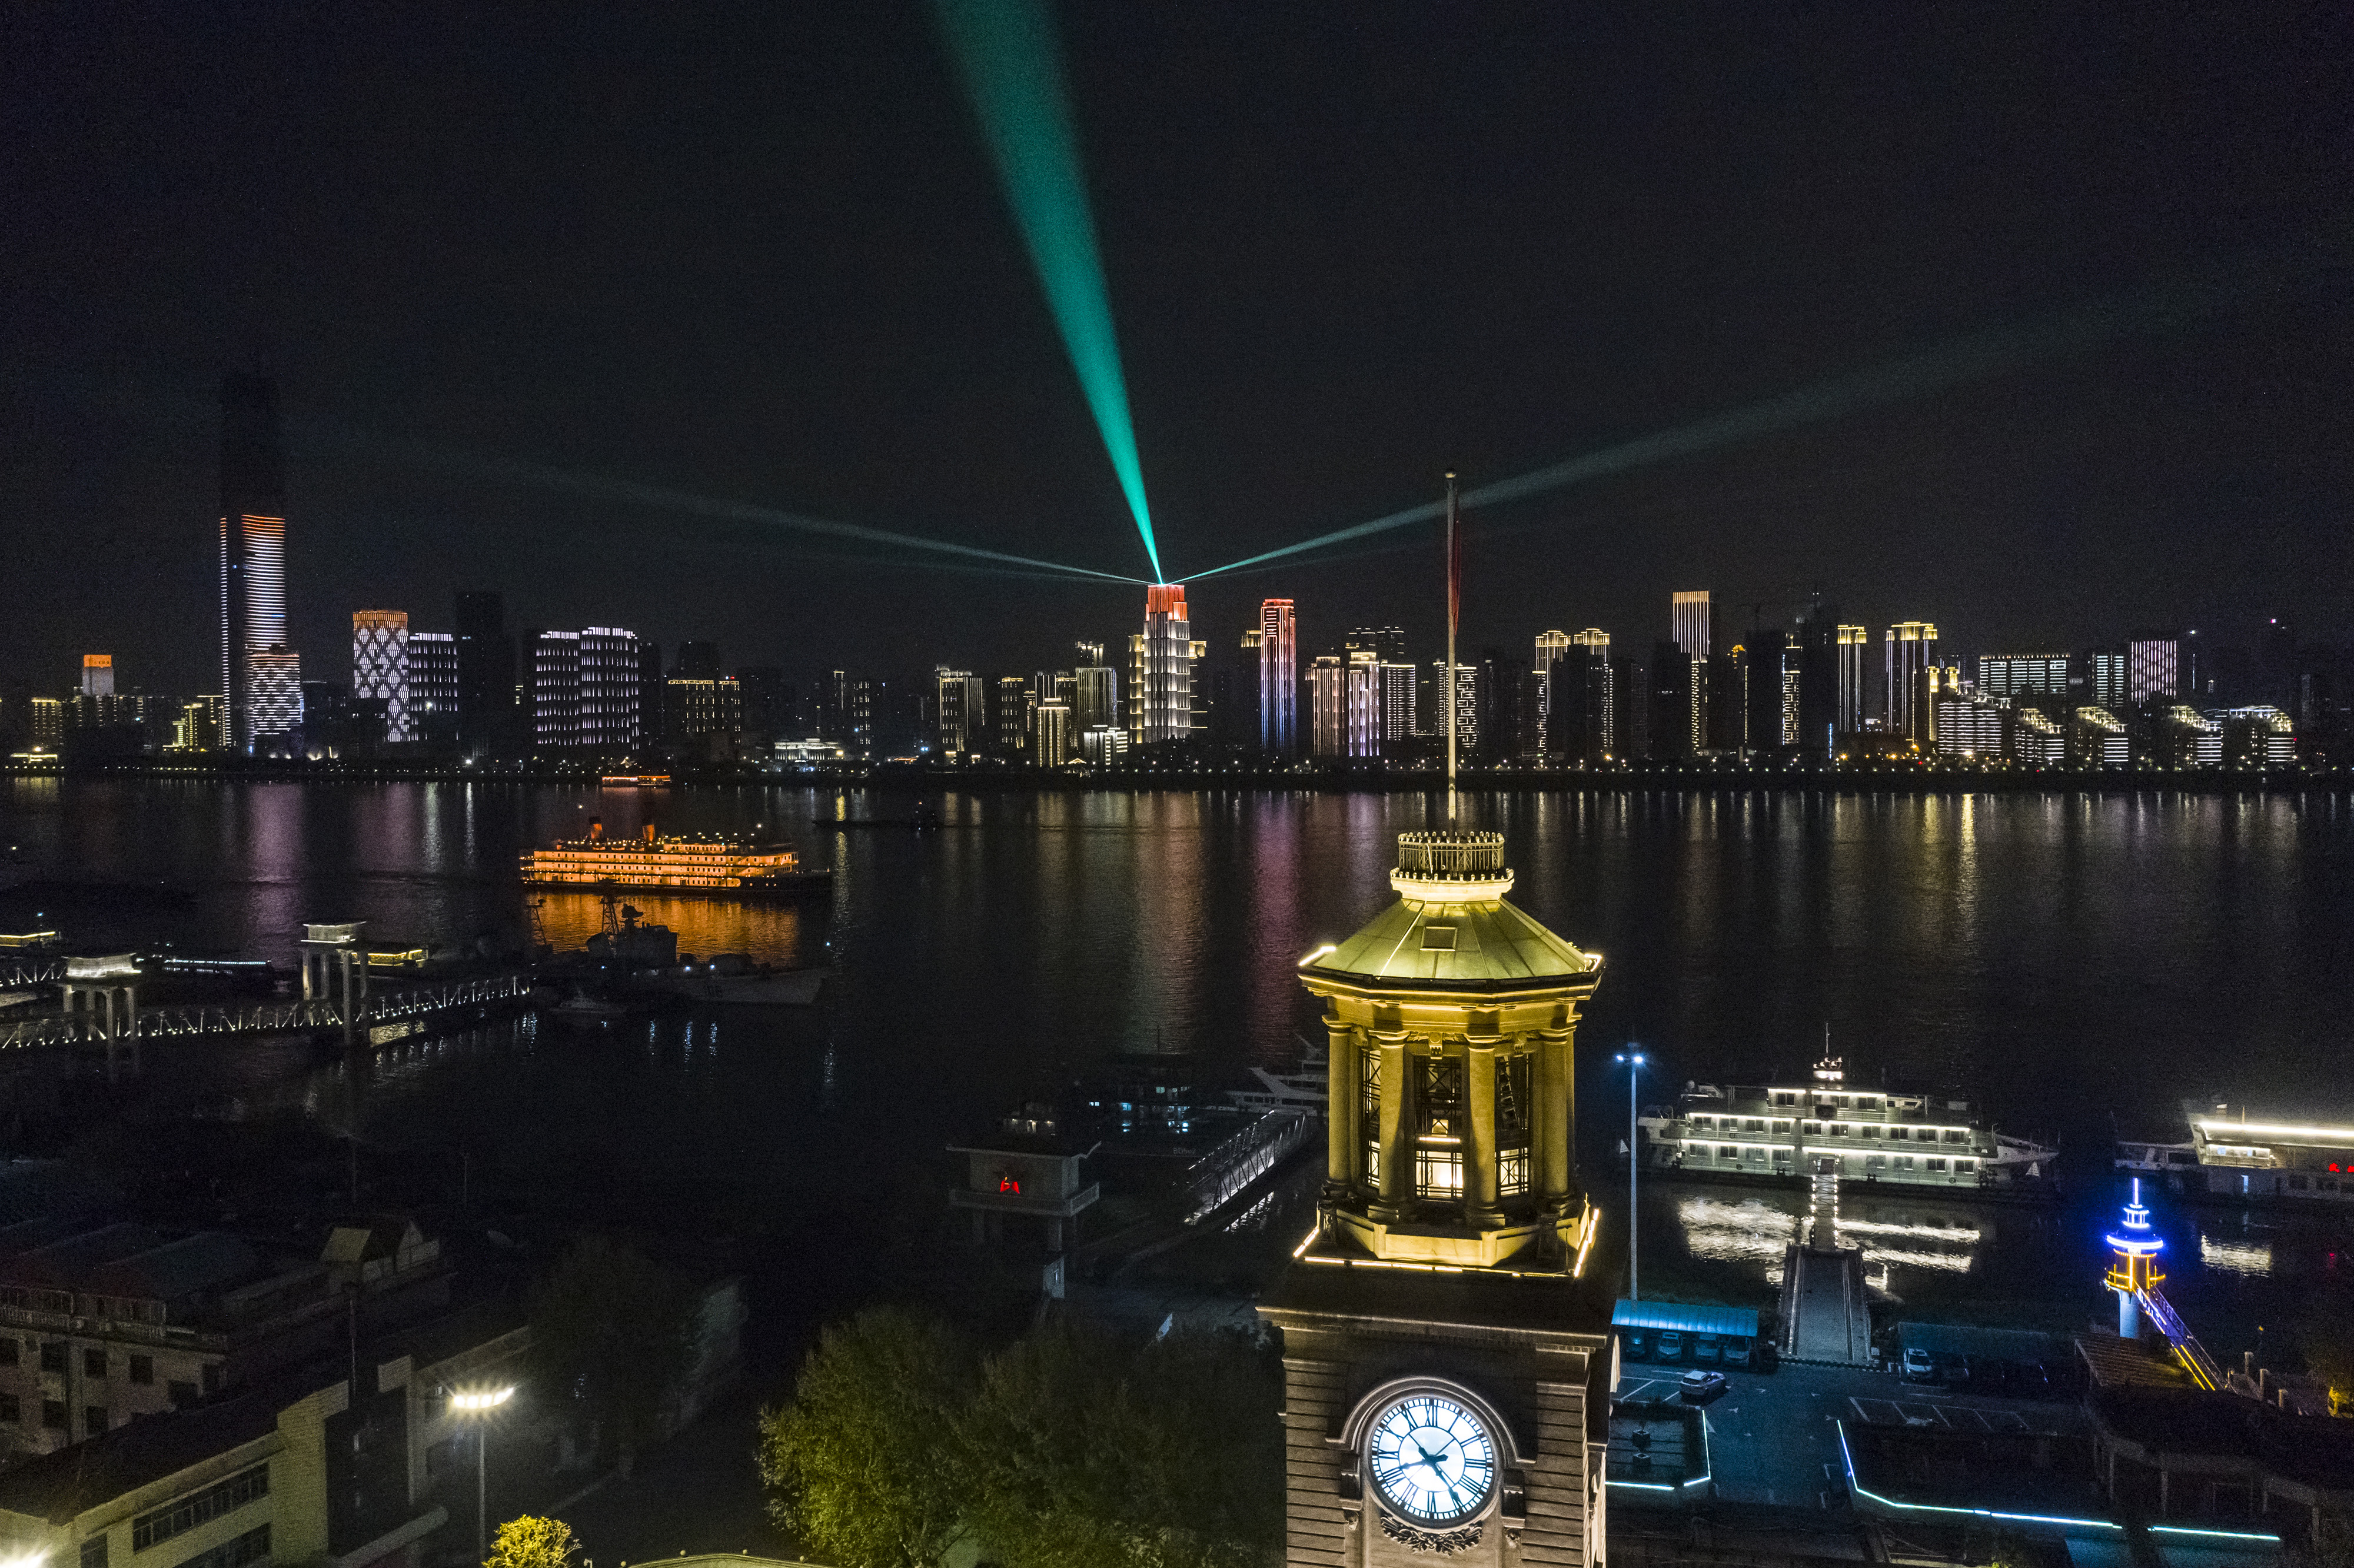 这是4月7日晚拍摄的武汉市江汉关博物馆及长江对岸建筑灯光夜景(无人